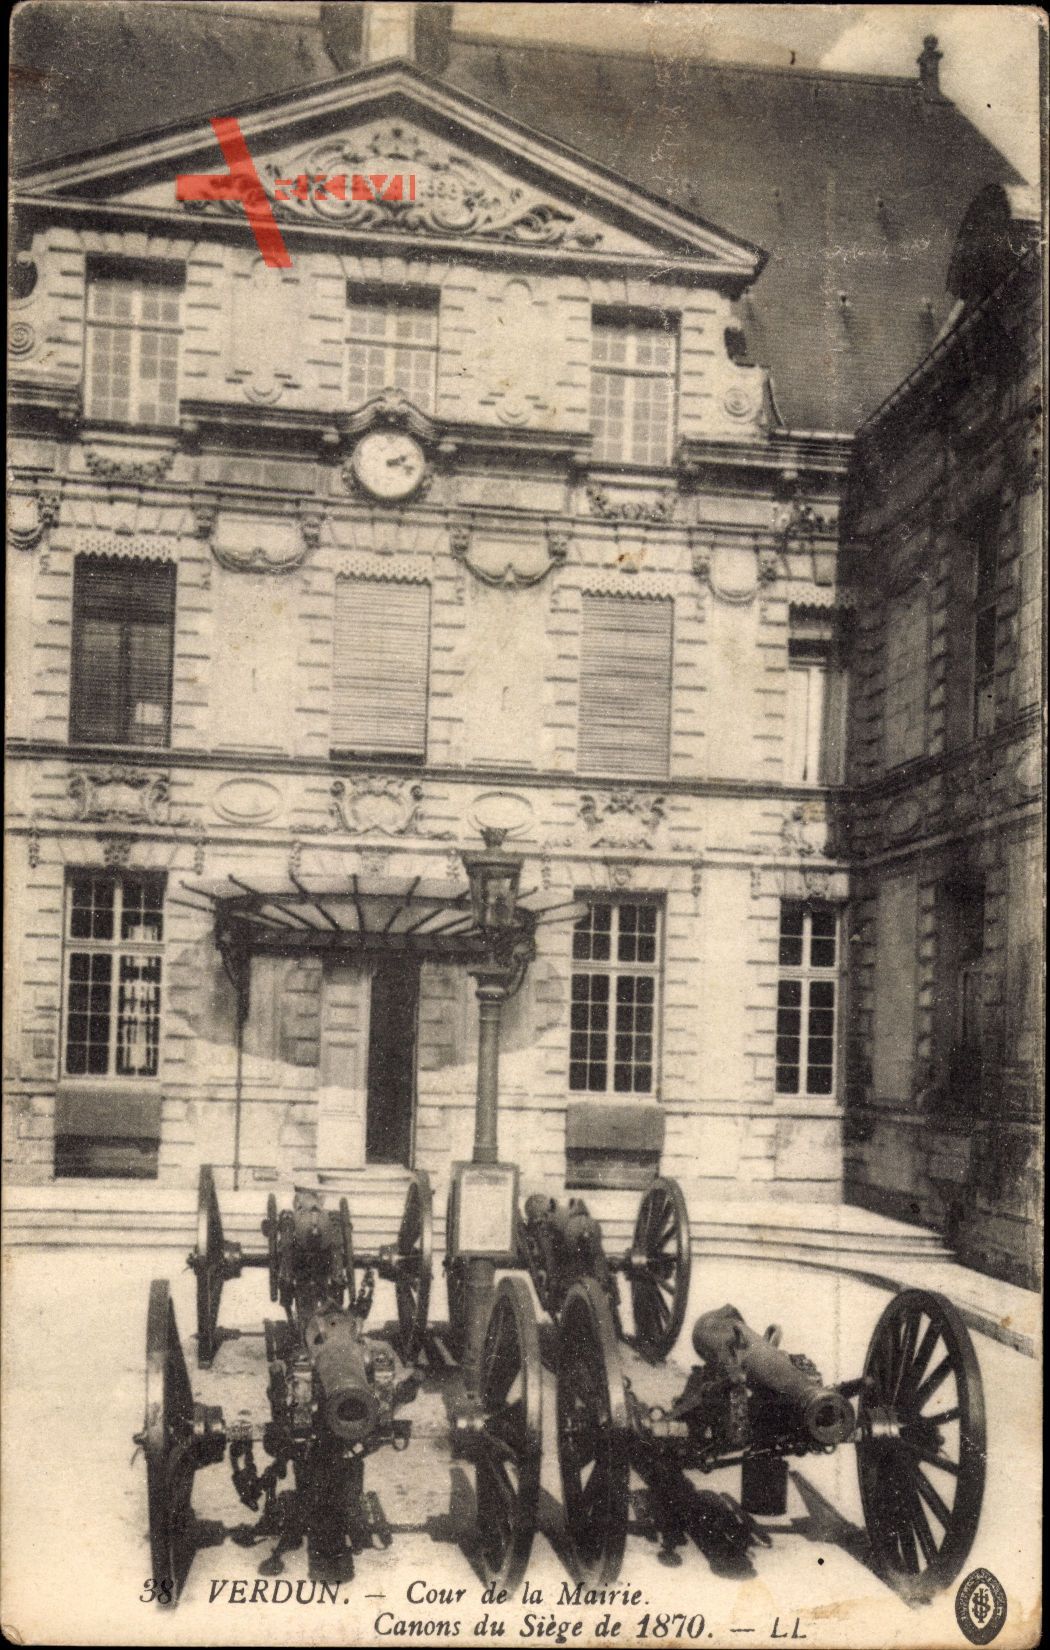 Verdun Meuse, Cour de la Mairie, Canons du Siège de 1870